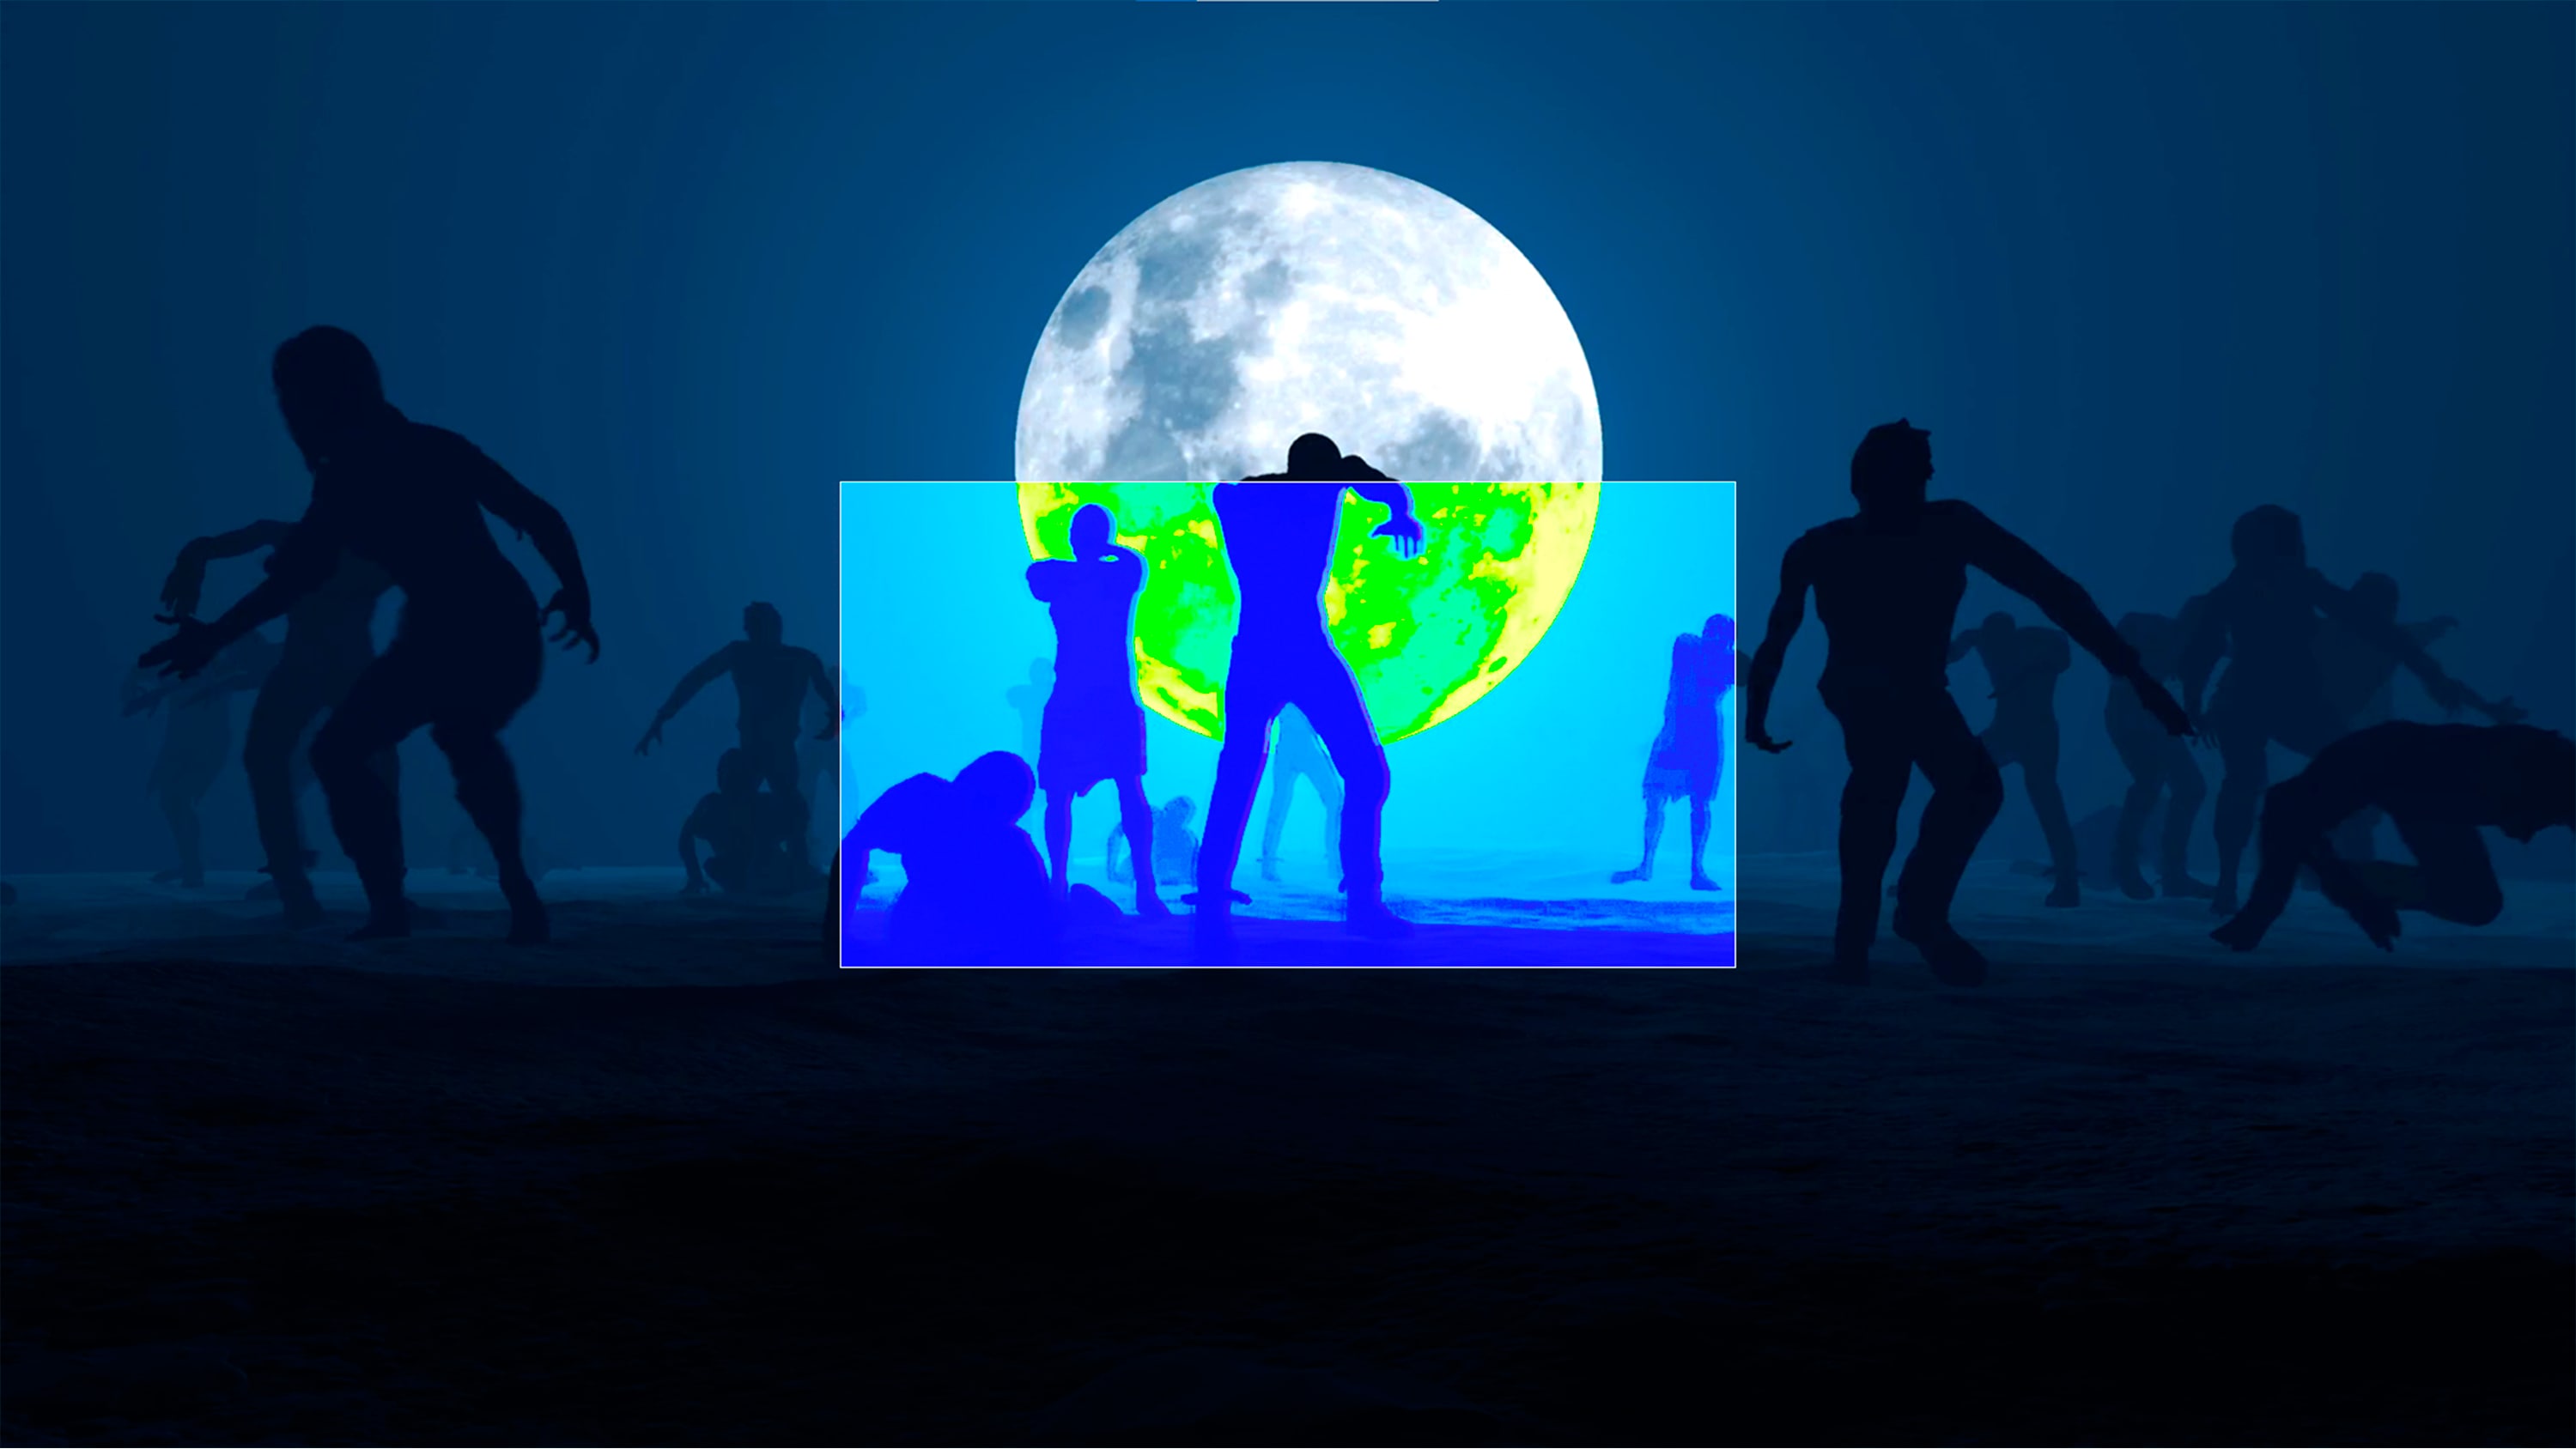 Spilbillede af zombier foran en fuldmåne.